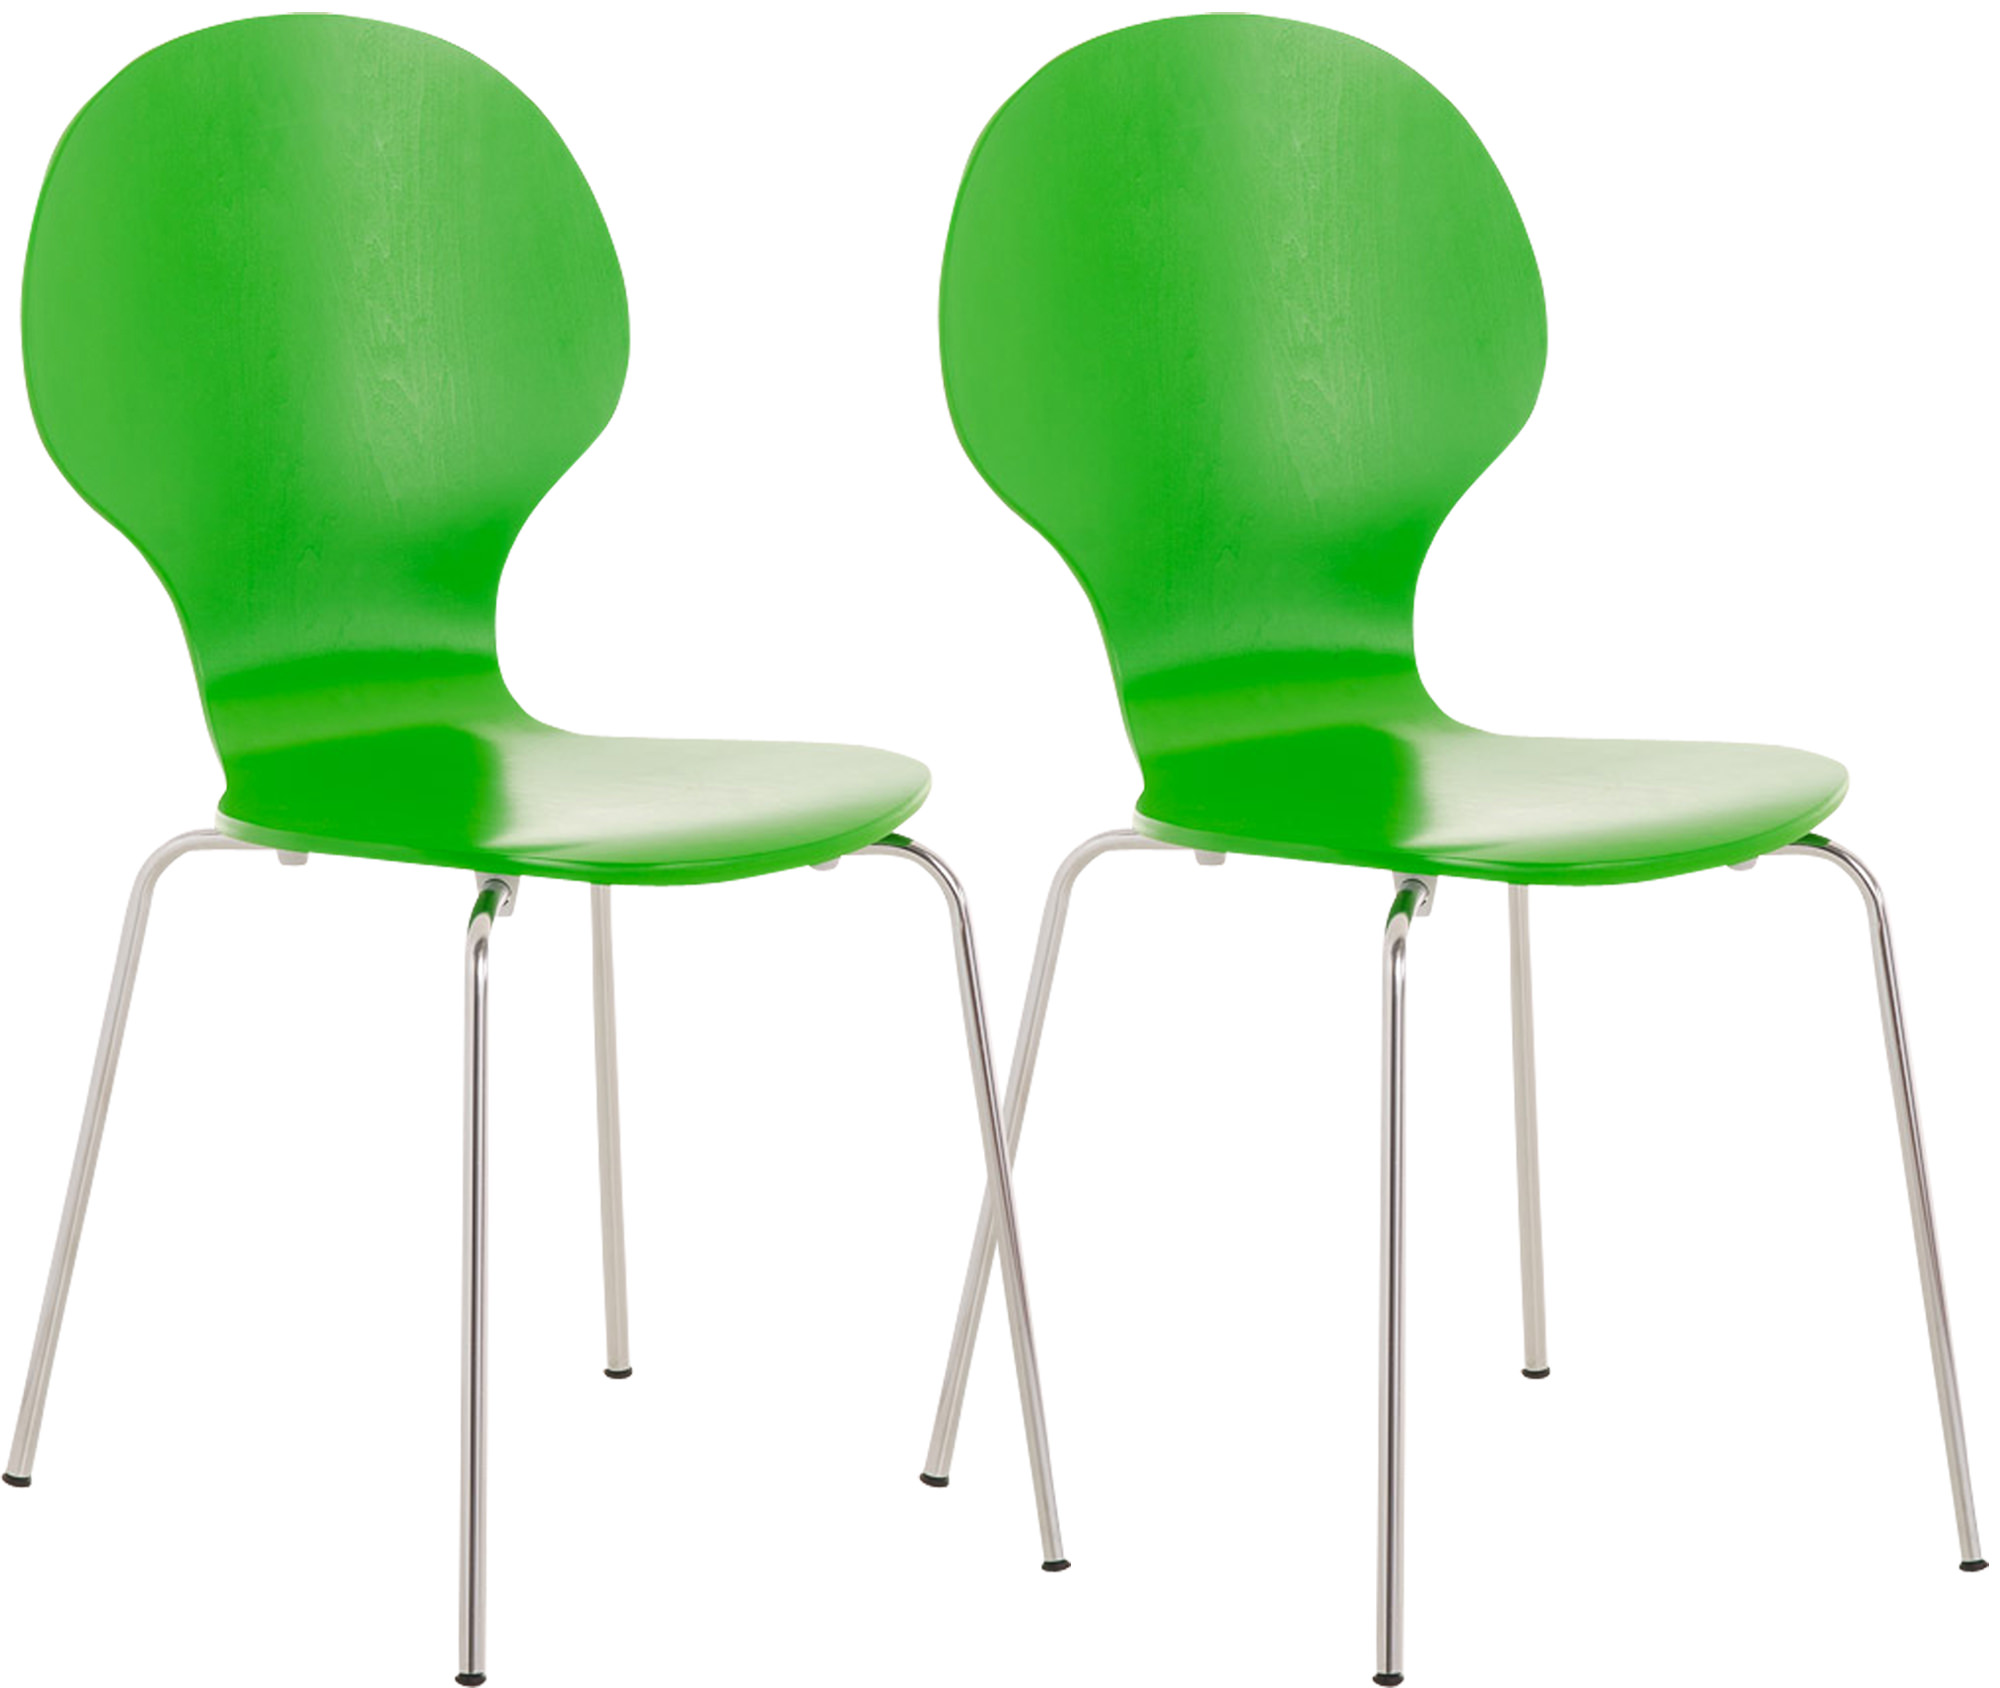 2x Stapelstuhl DIEGO ergonomisch grün